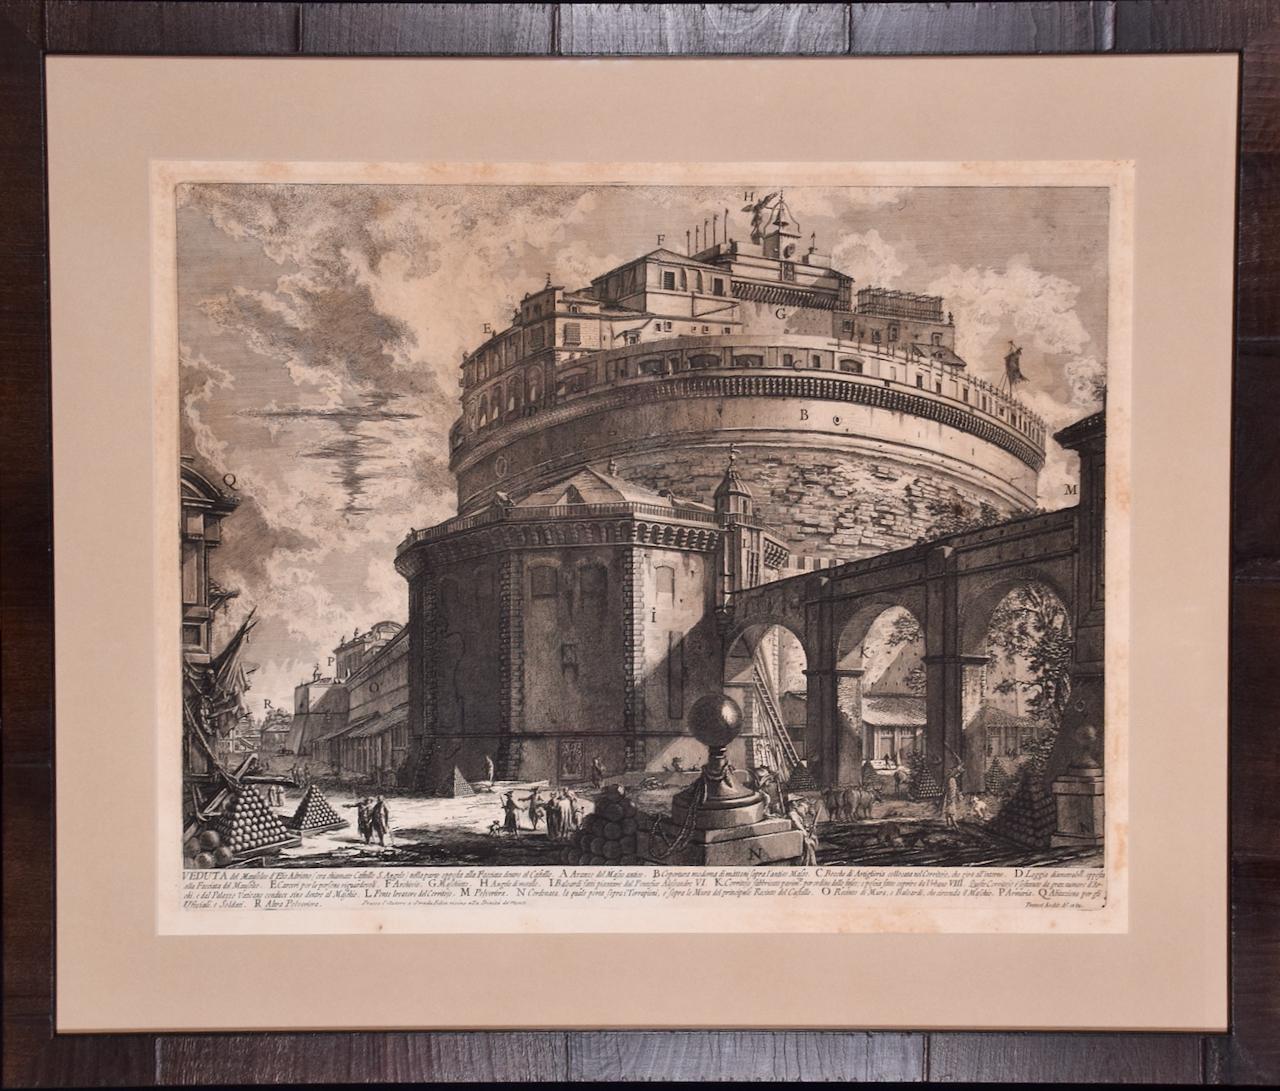 Giovanni Battista Piranesi Landscape Print – Hadrian's Mausoleum, Castel S. Angelo: Eine gerahmte Radierung von Piranesi aus dem 18. Jahrhundert